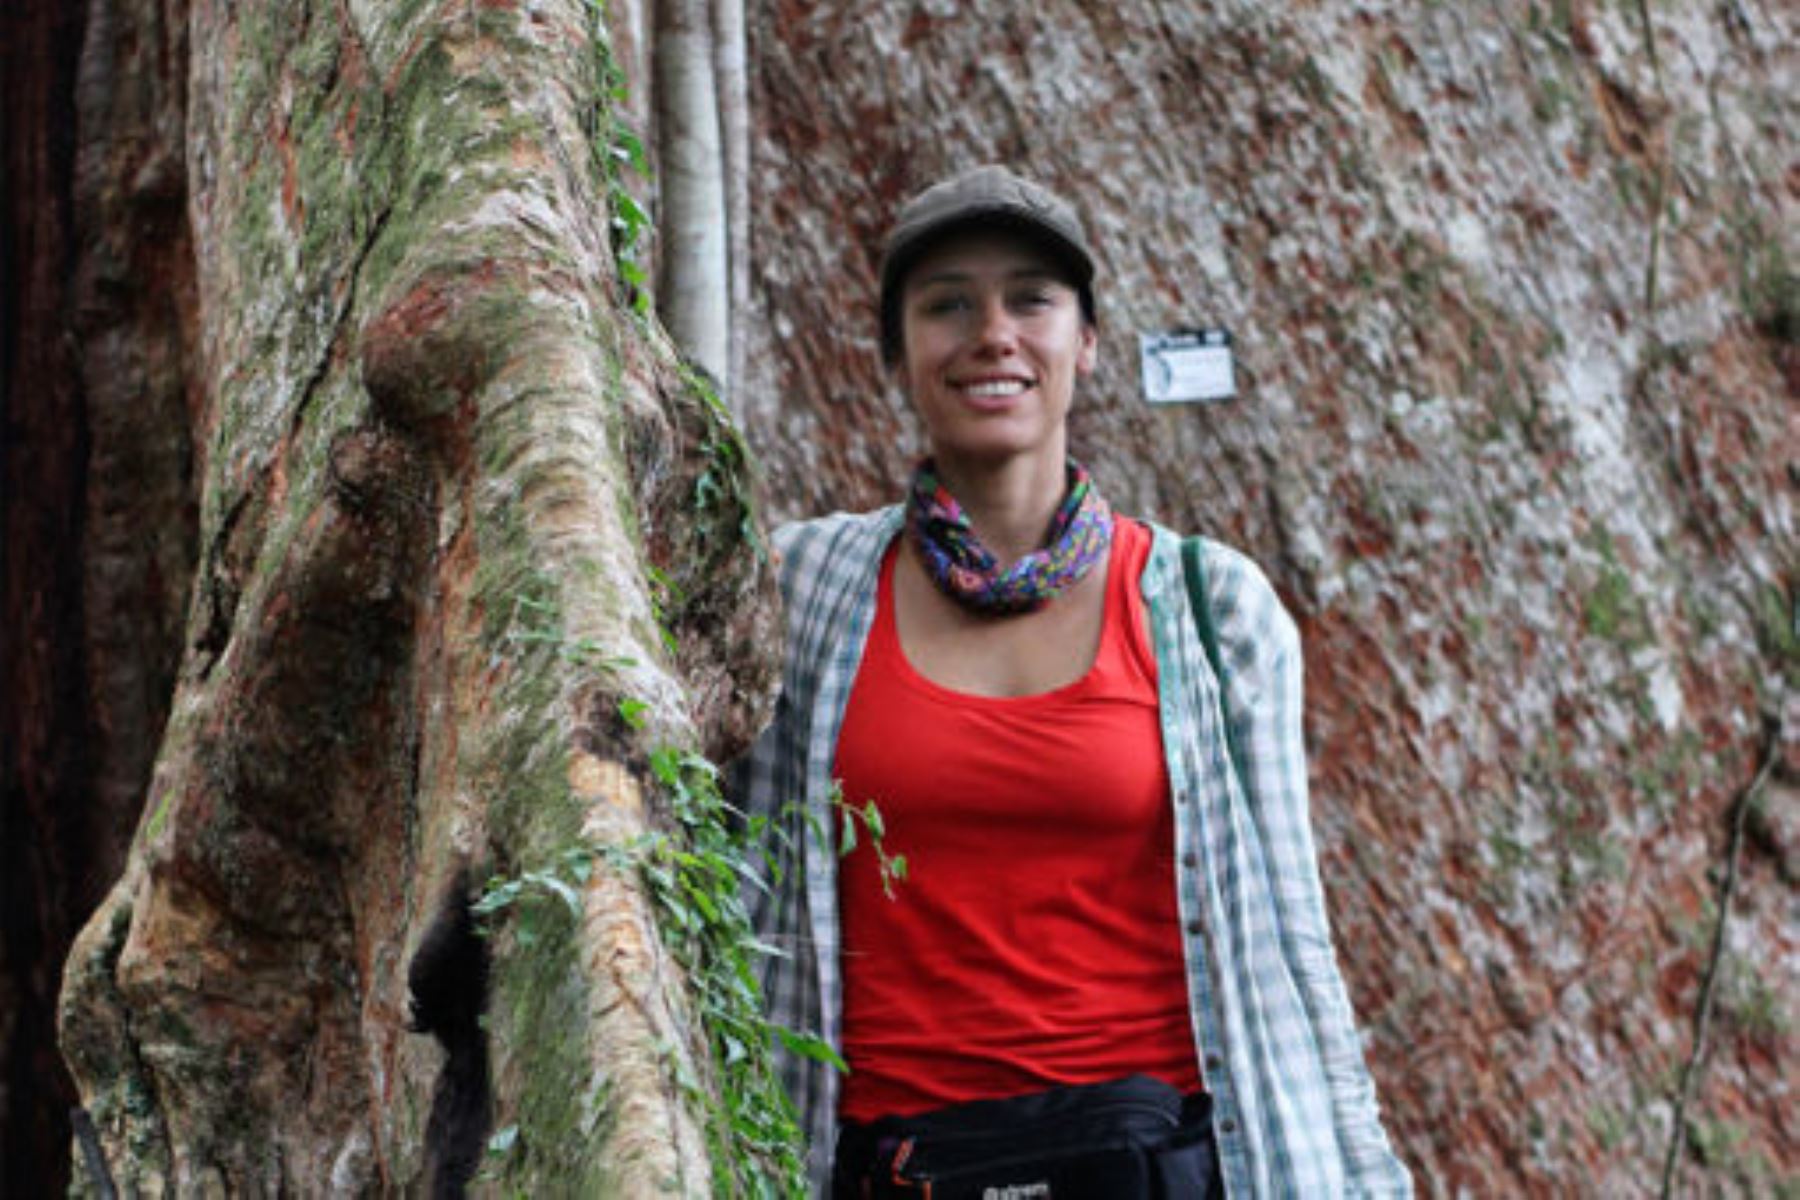 Conoce a Tatiana Espinoza, la peruana premiada por su labor ambientalista y protección de bosques en Madre de Dios. Foto: Arbio Perú